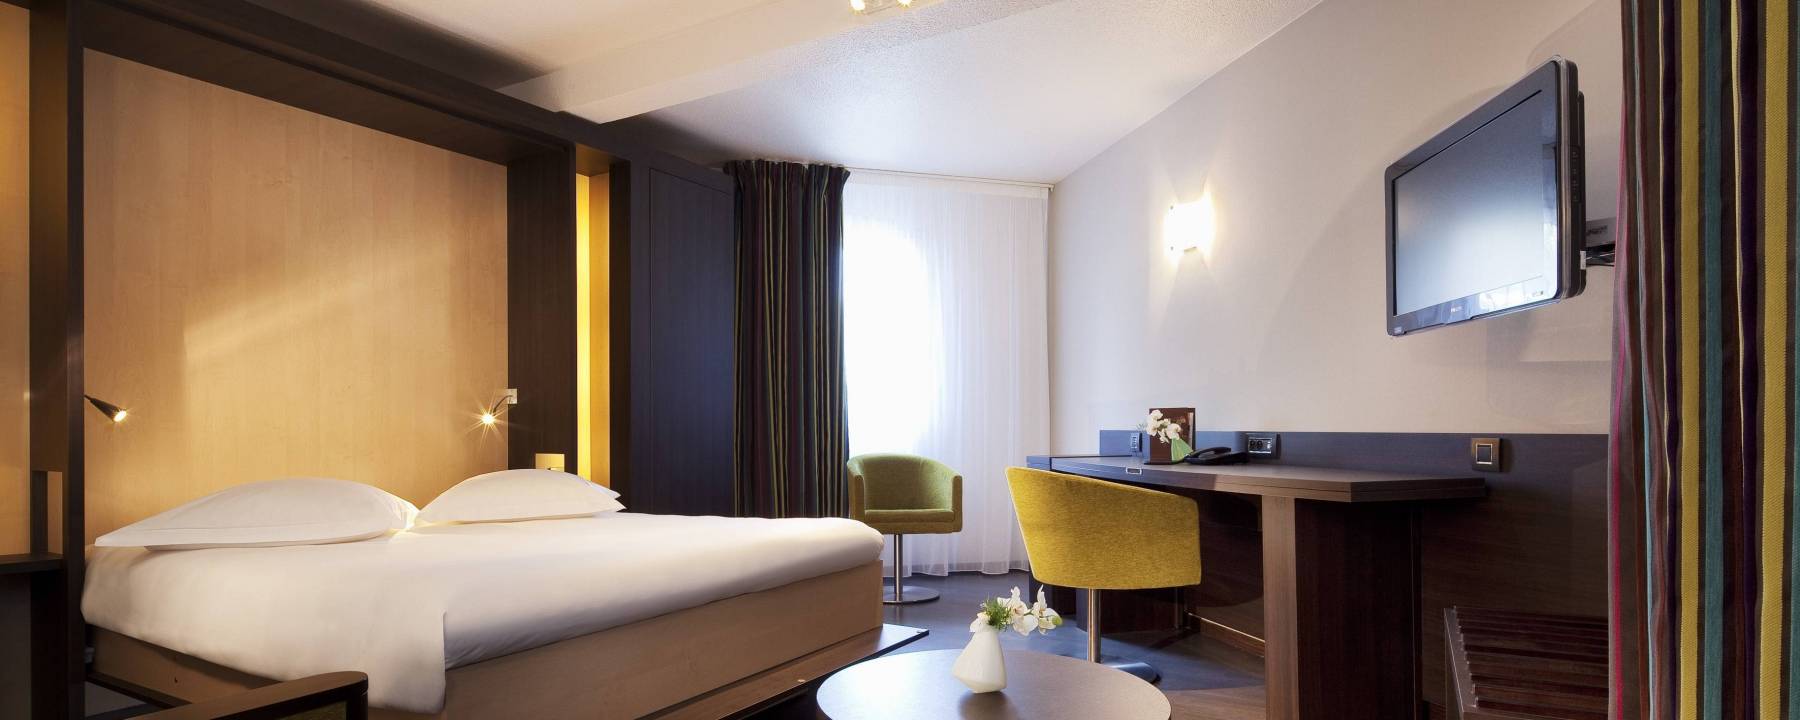 Recrutement: Femme de chambre / Valet de chambre EXTRA Accroissement activité W/M chez Oceania Hotels à Clermont-Ferrand